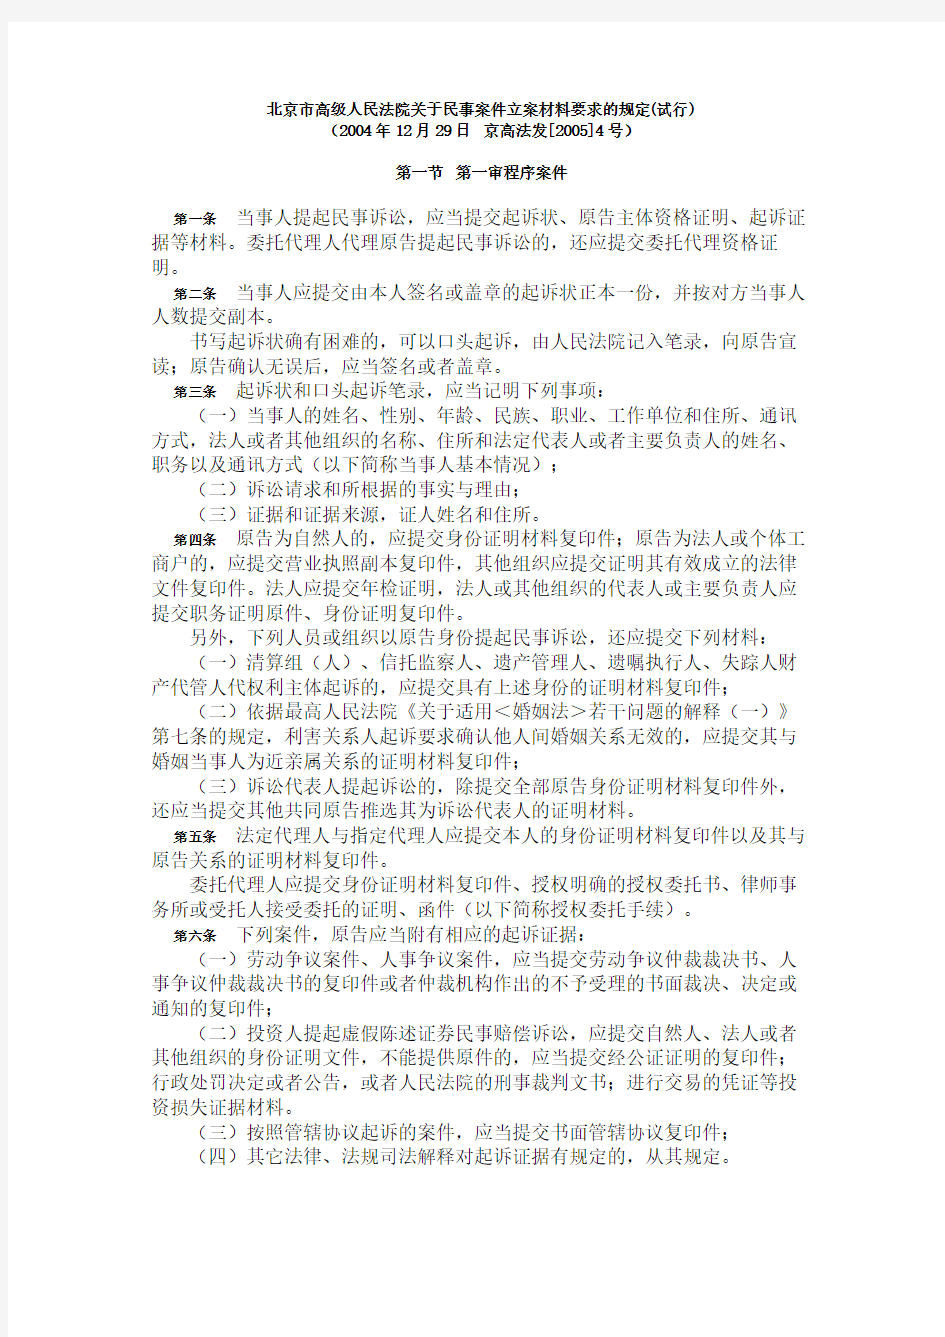 北京市高级人民法院关于民事案件立案材料要求的规定(试行)